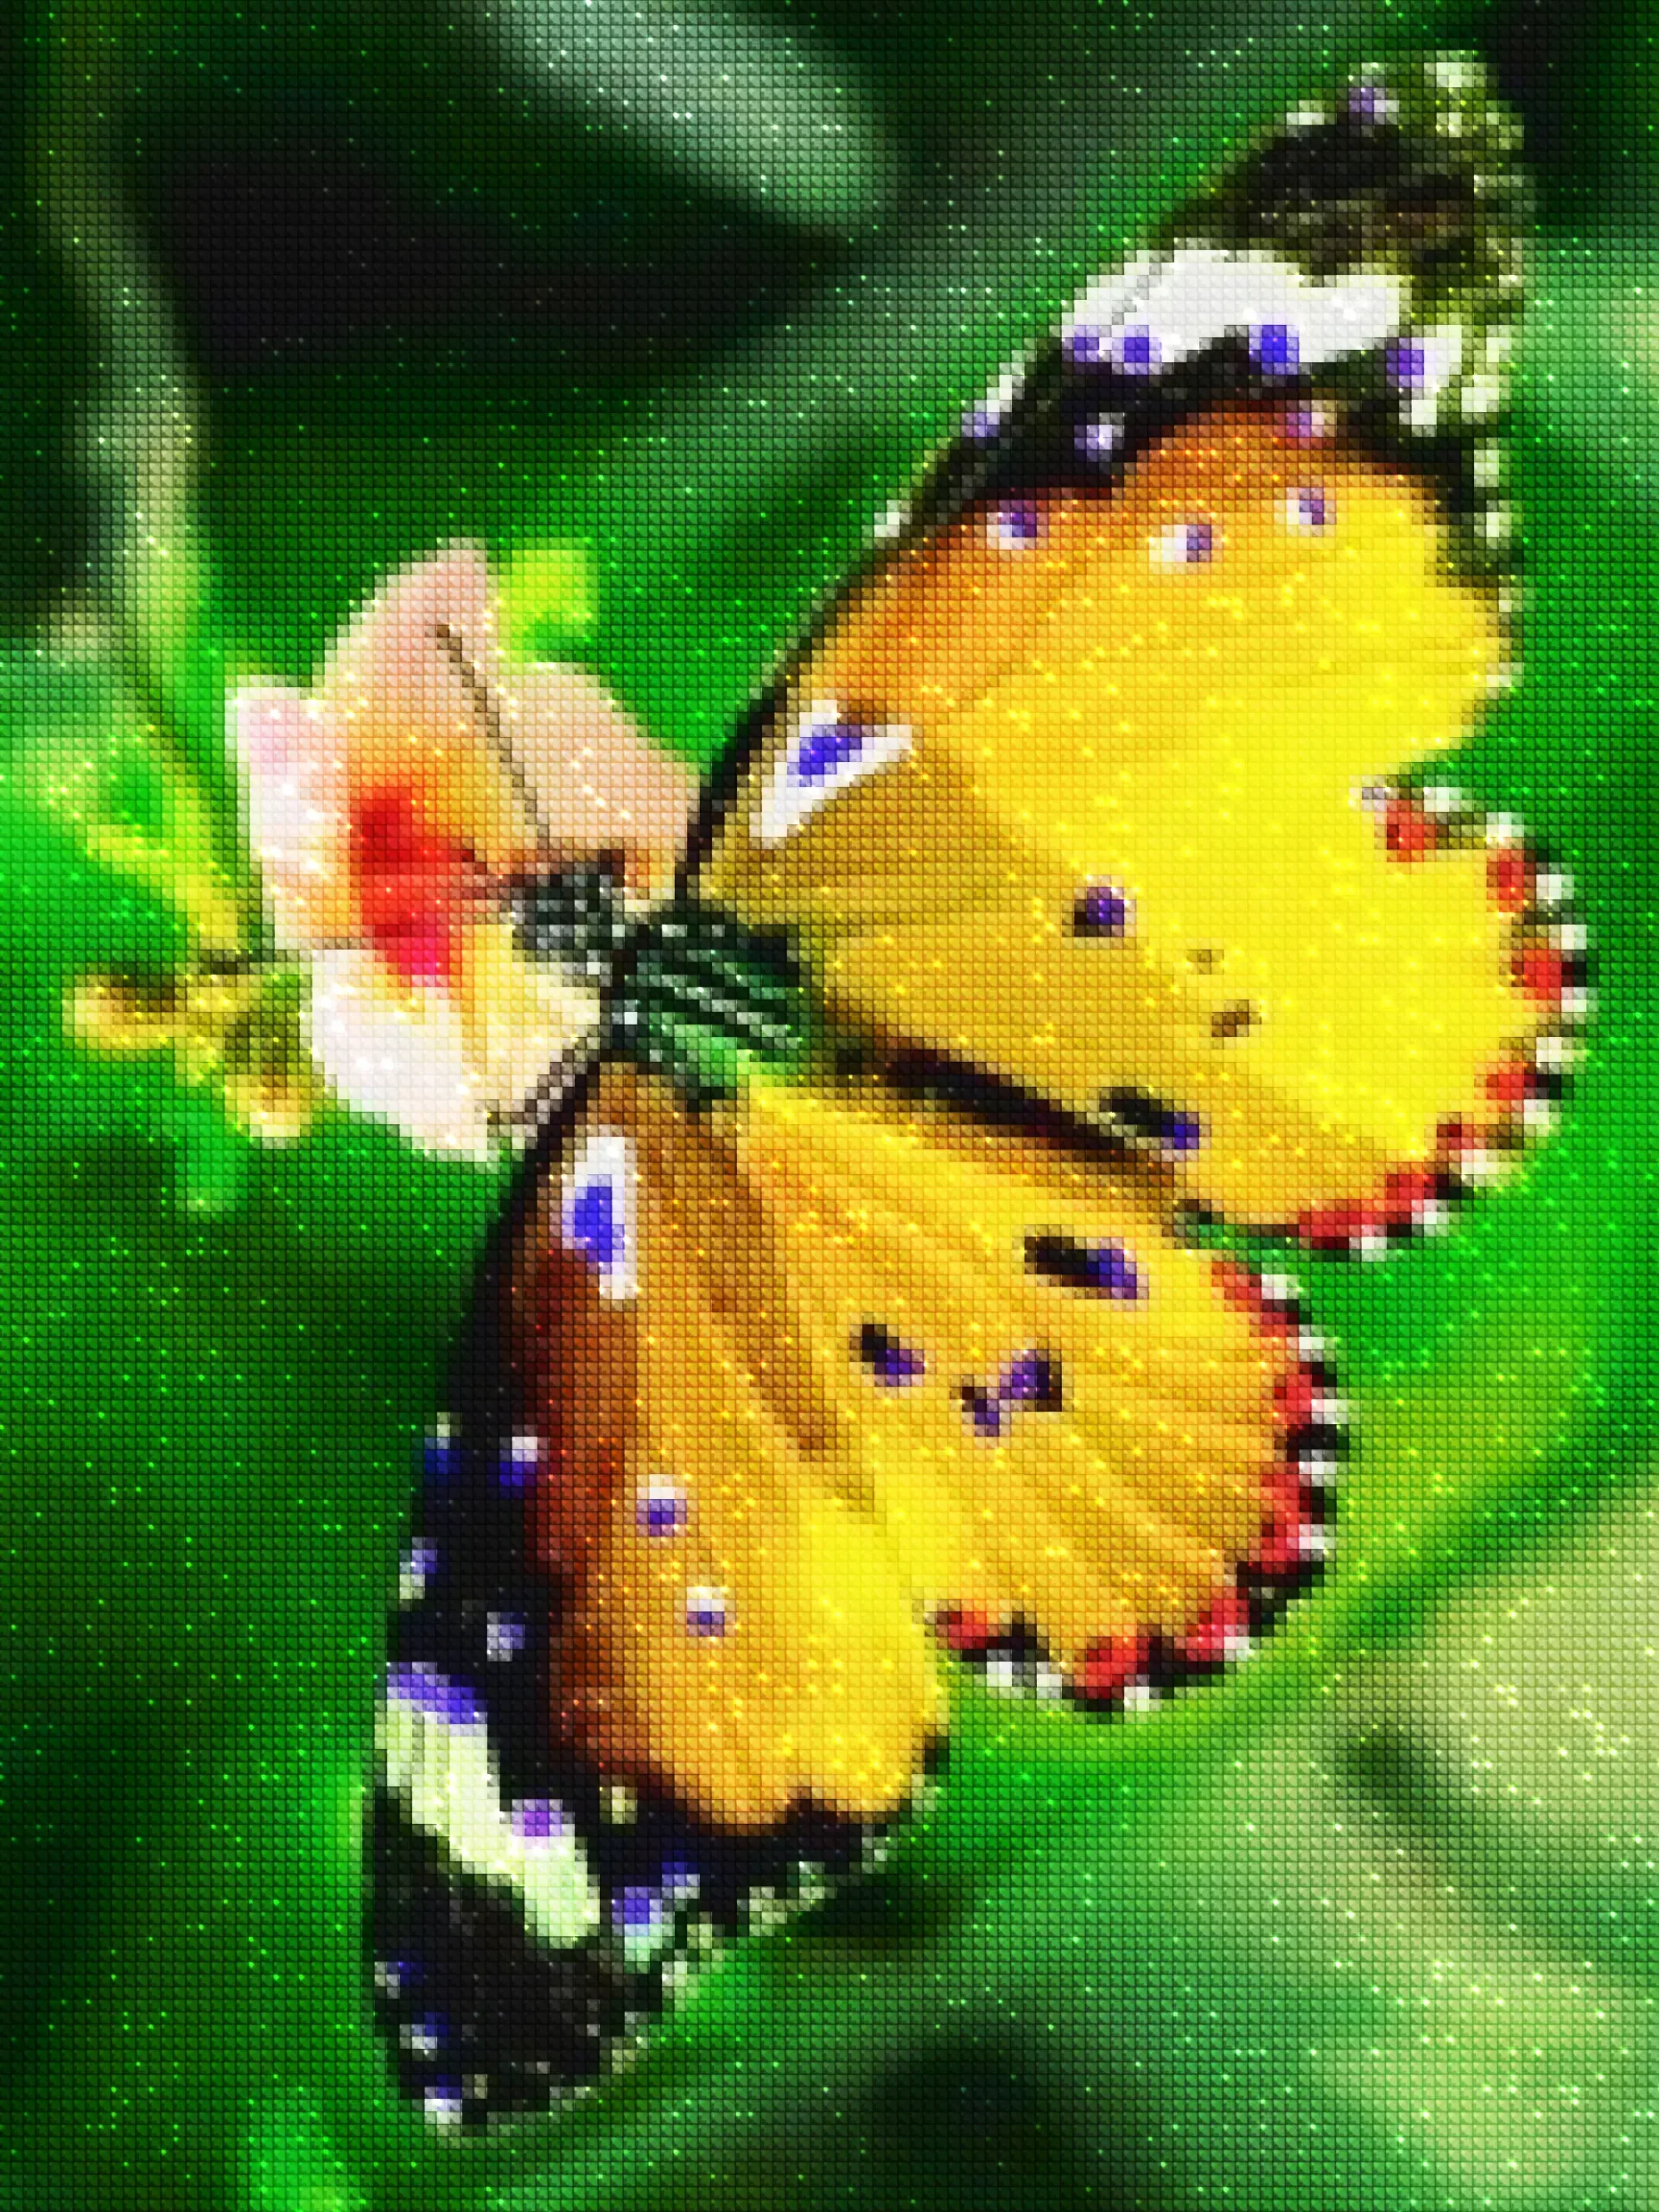 diamanter-veiviser-diamant-malesett-Natur-sommerfugl-Den fargerike sommerfuglen-diamonds.webp